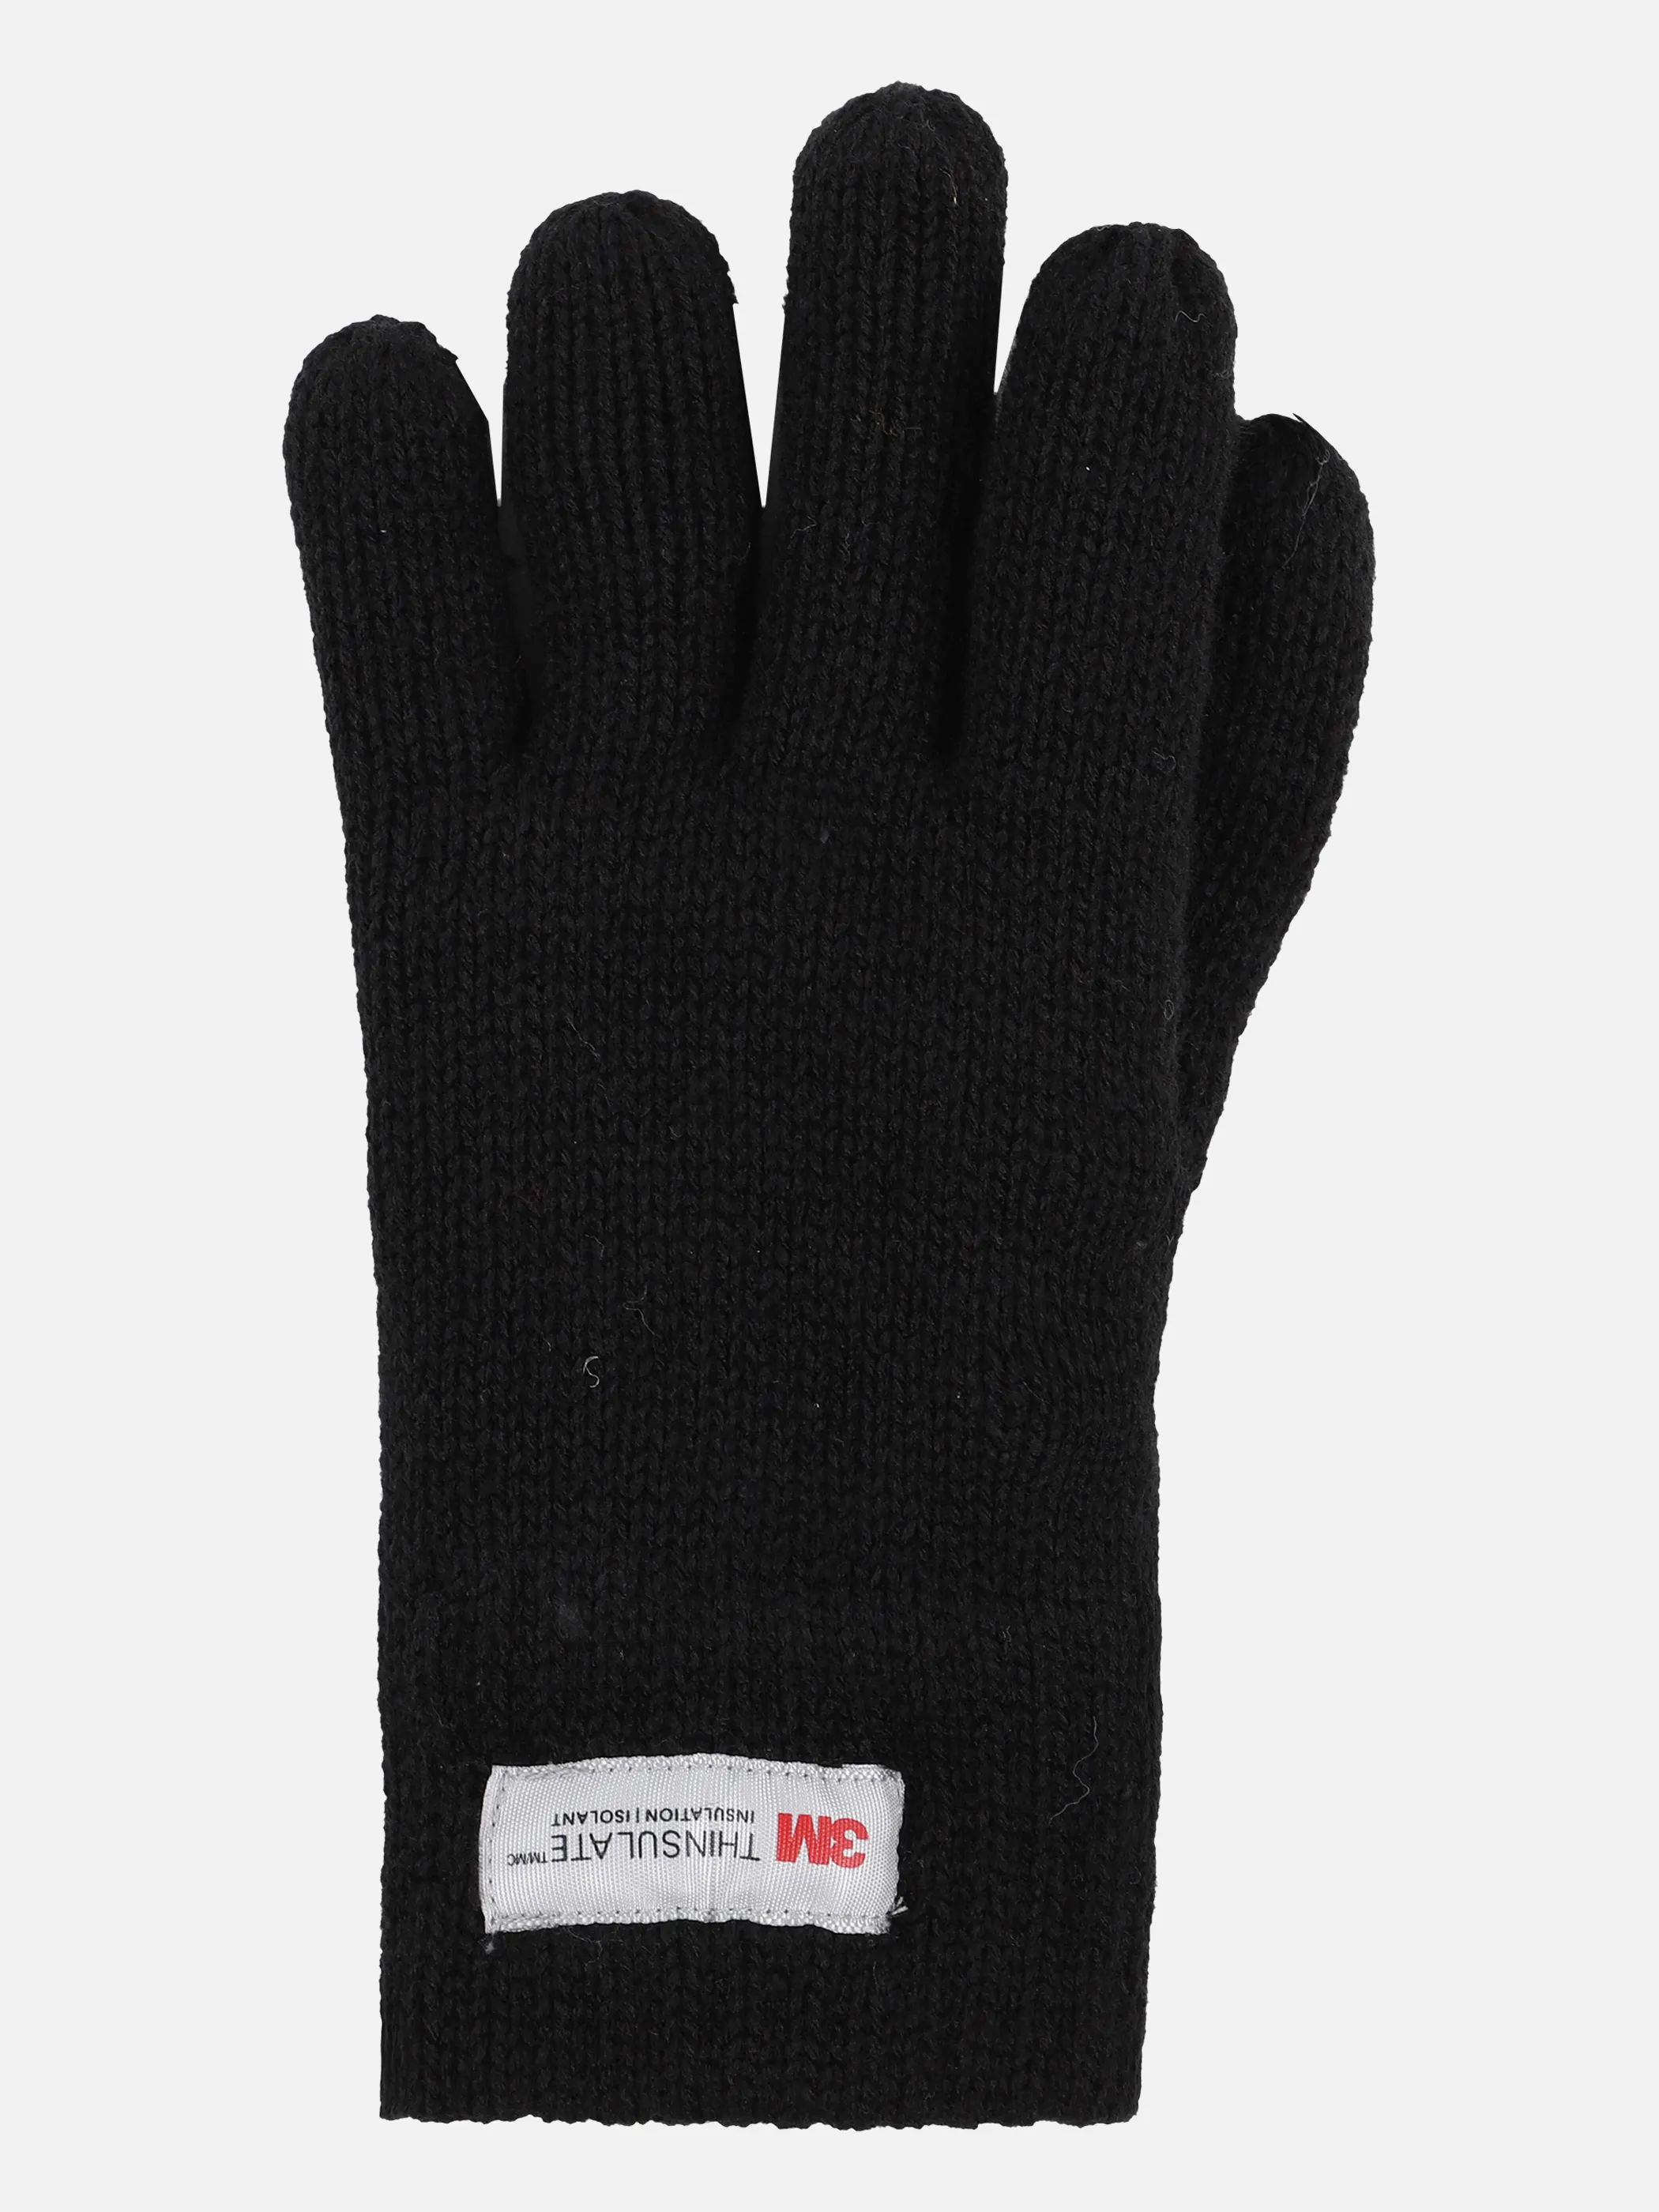 Stop + Go TU Handschuhe in schwarz mit Schwarz 870863 SCHWARZ 3